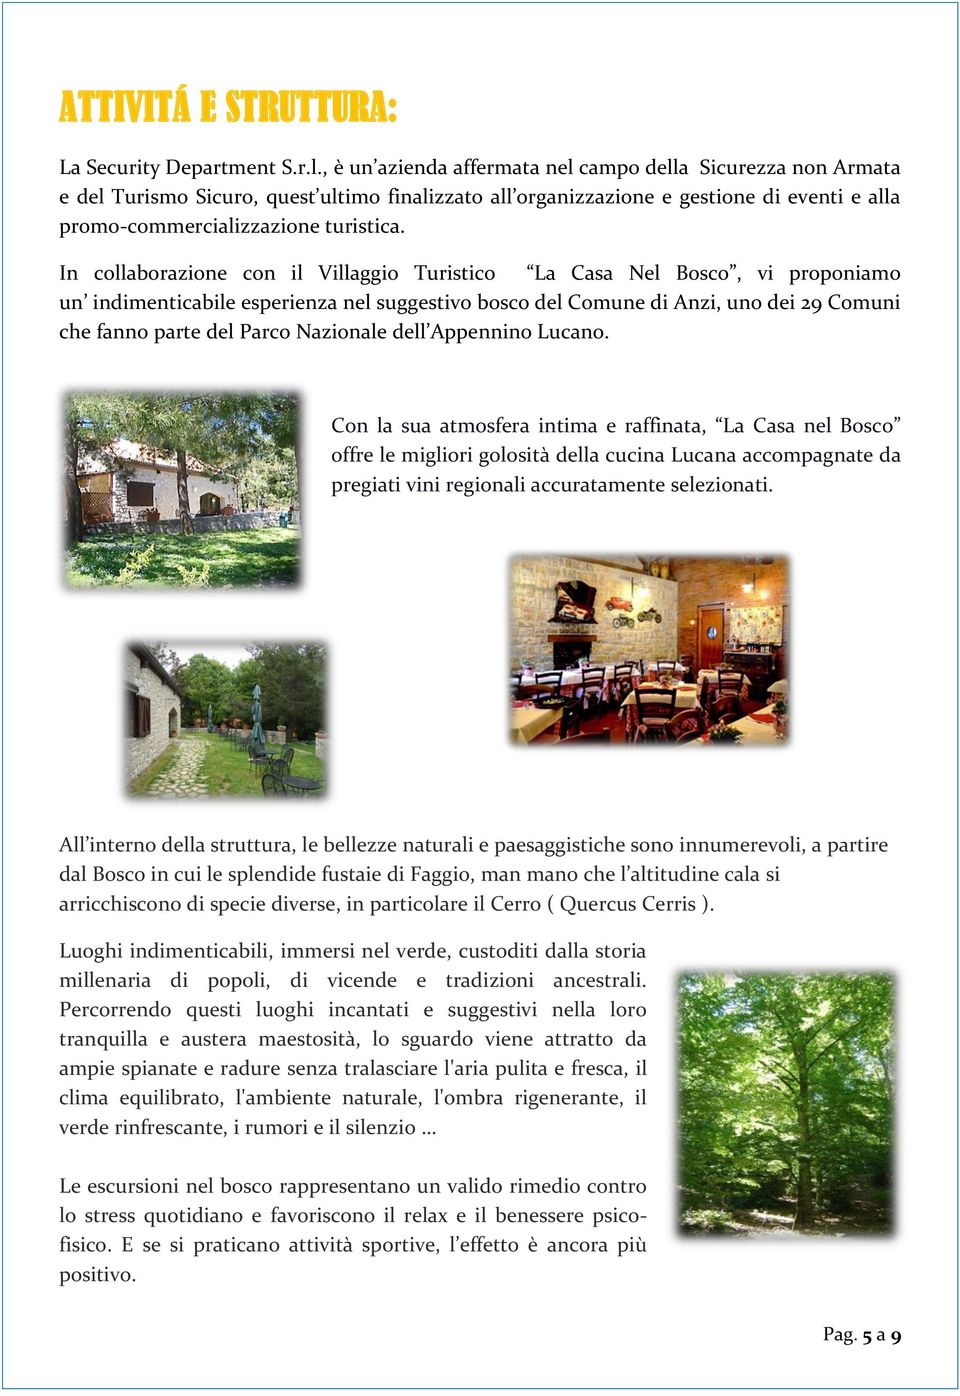 In collaborazione con il Villaggio Turistico La Casa Nel Bosco, vi proponiamo un indimenticabile esperienza nel suggestivo bosco del Comune di Anzi, uno dei 29 Comuni che fanno parte del Parco